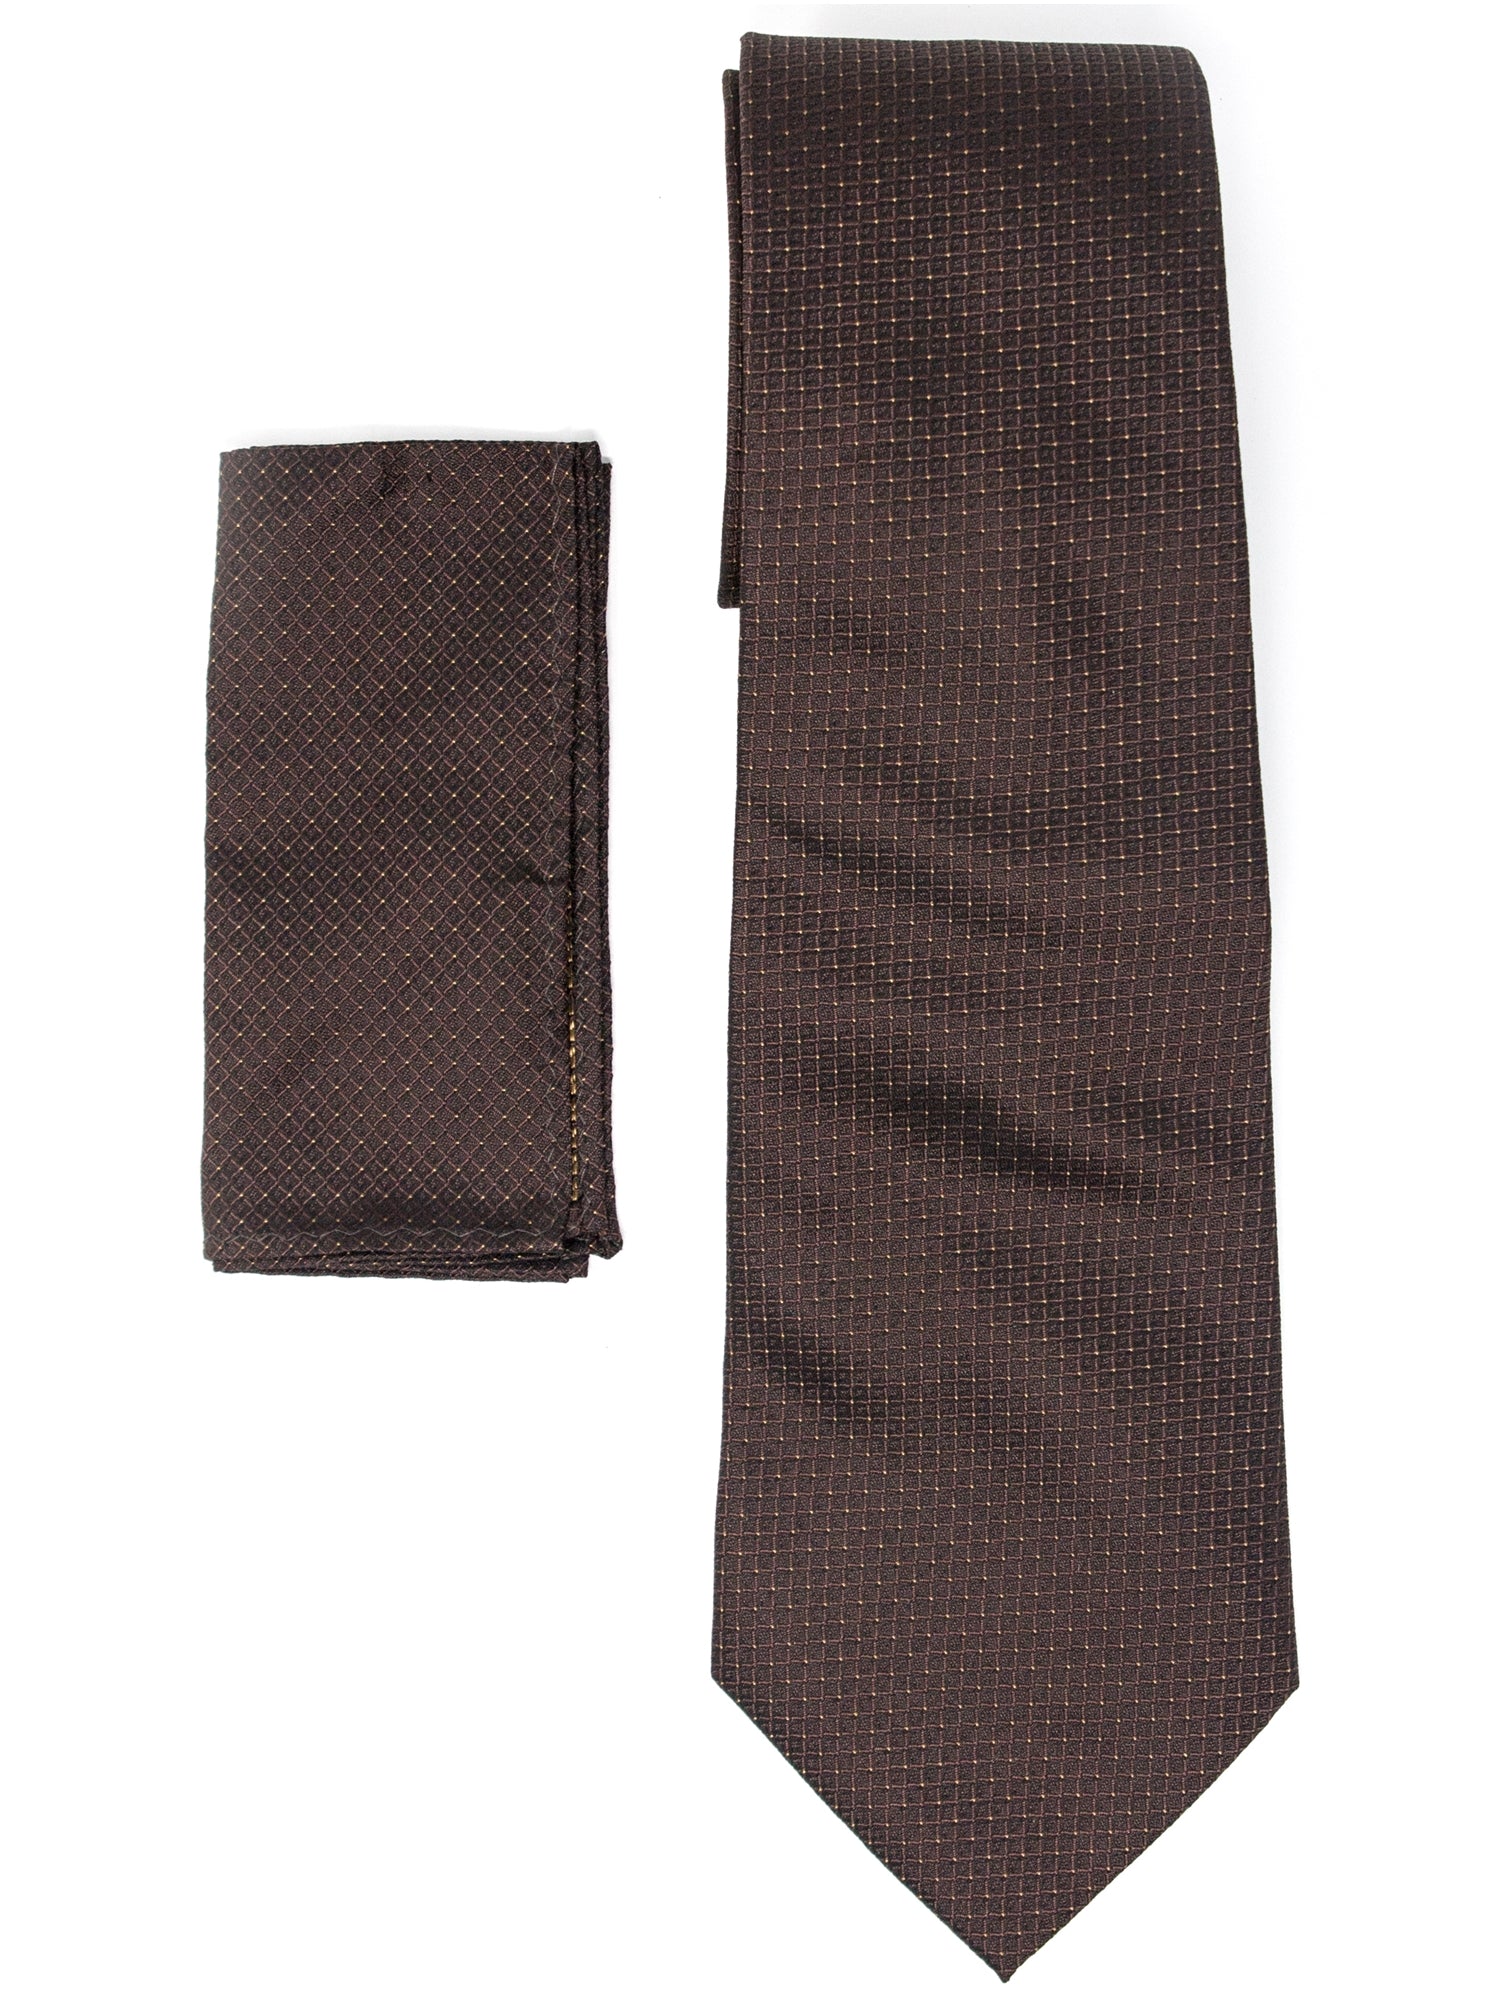 Men's Silk Woven Wedding Neck Tie With Handkerchief Neck Tie TheDapperTie Brown Geometric 1 Regular 